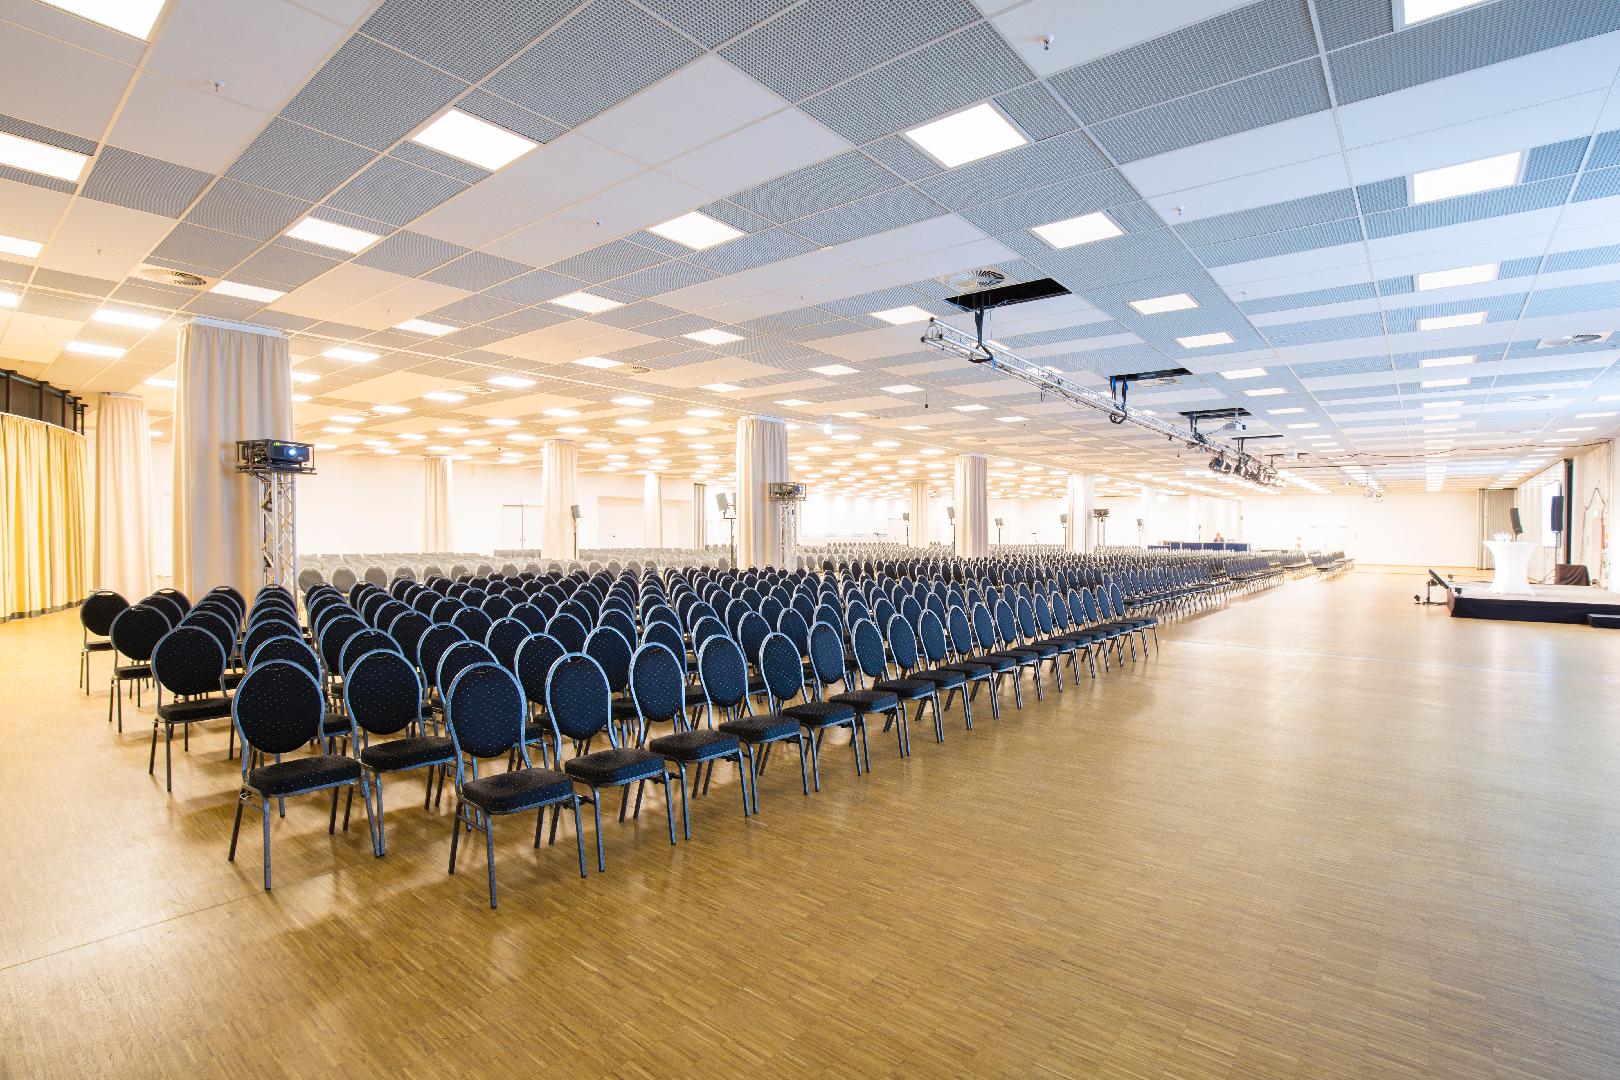 Bild 1 von Convention Hall des Mercure Hotel MOA Berlin I Atrium I 40 Eventspaces über 3 Meeting Etagen I 336 Zimmer